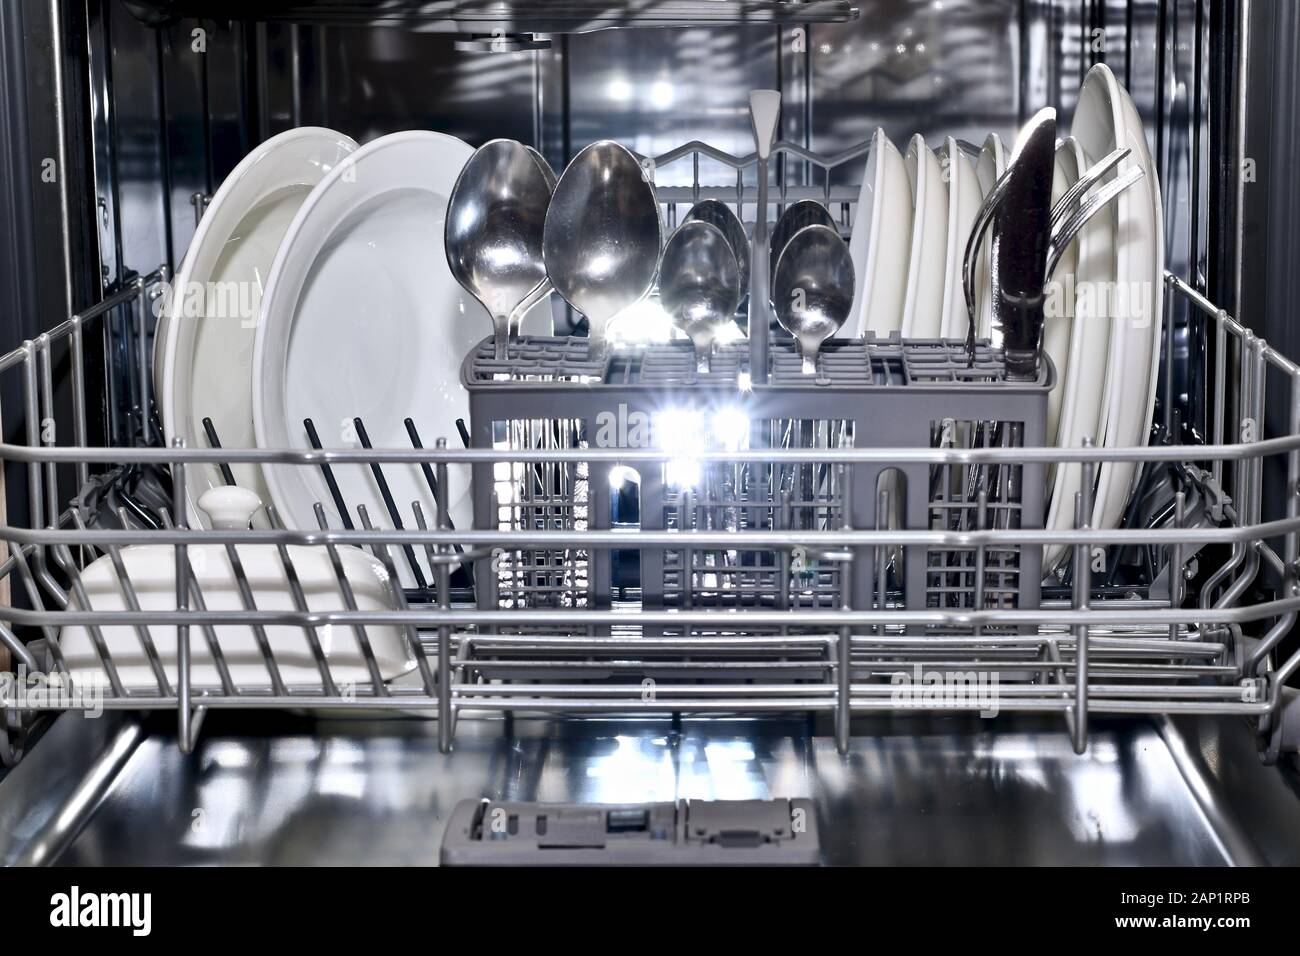 La bandeja inferior de la cesta de lavavajillas se empuja hacia adelante en forma ordenada llena con pura utensilios de espumoso. Foto de stock